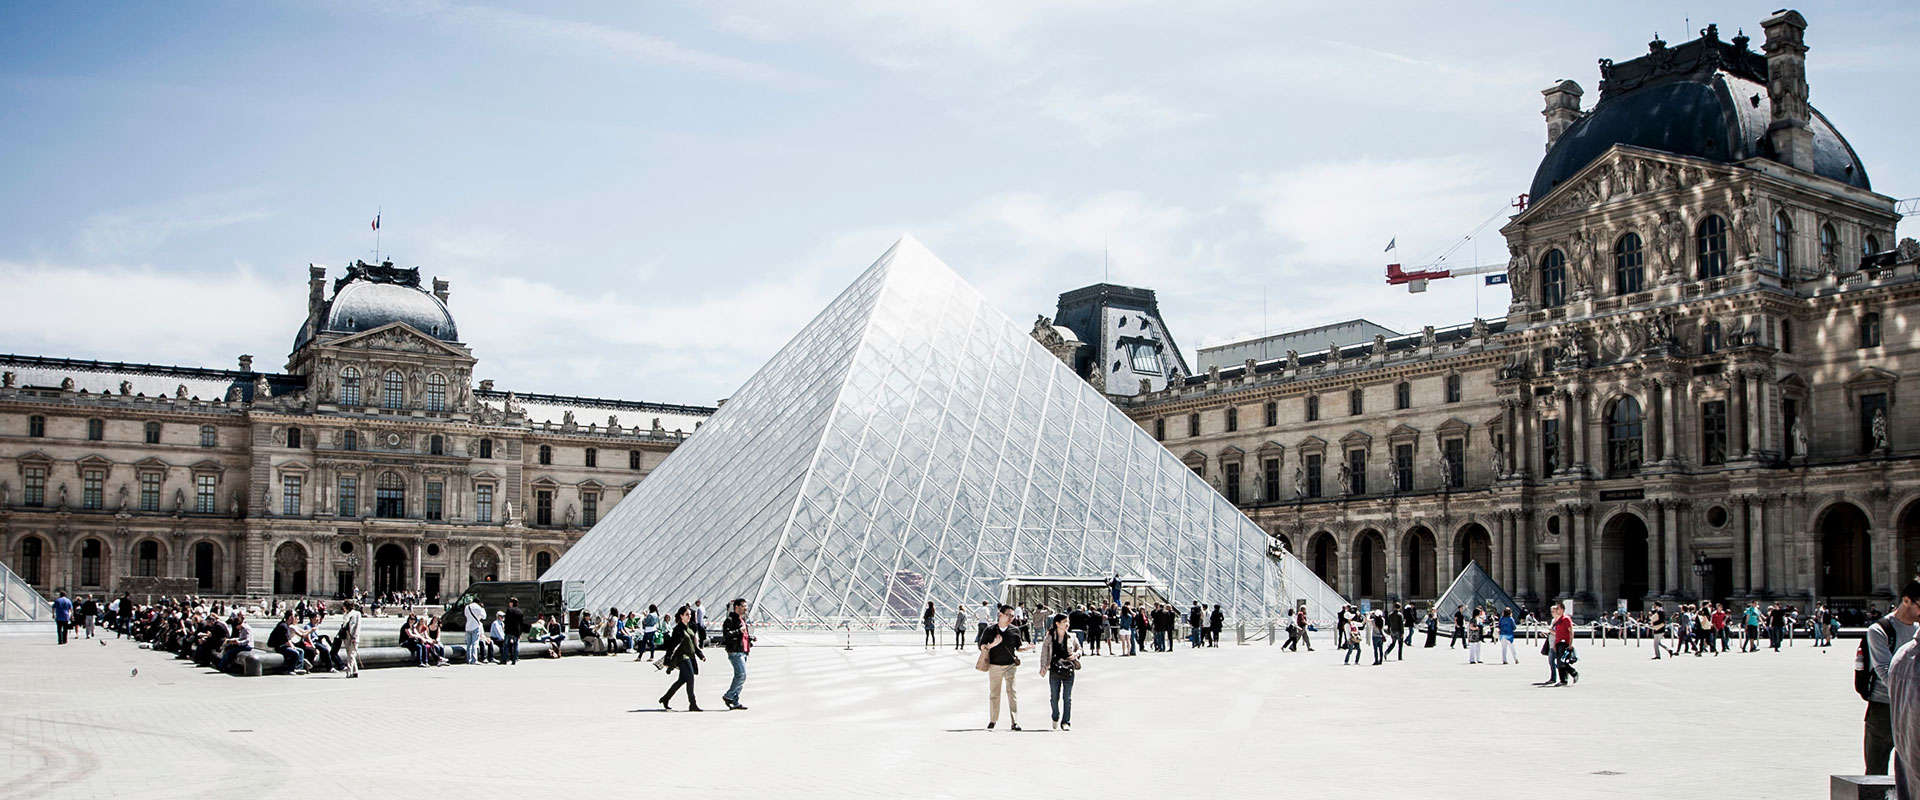 Louvre museum Collectrium